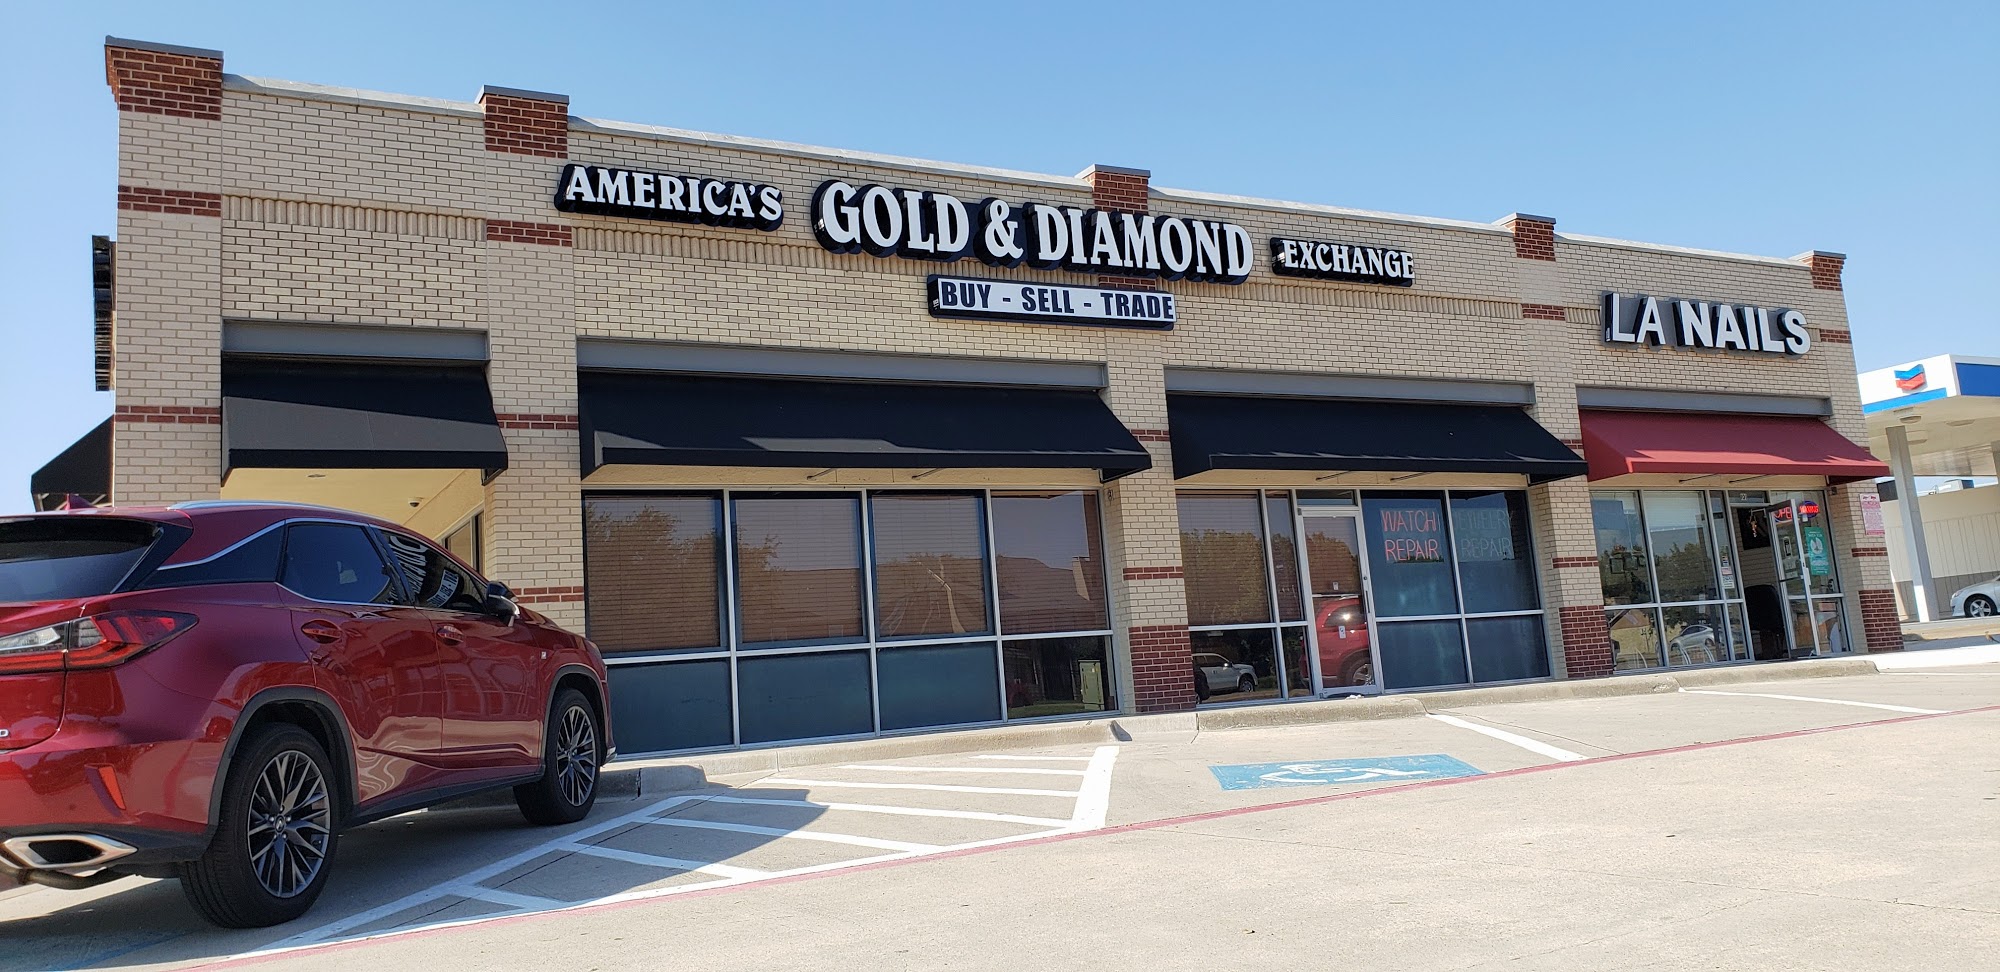 America's Diamond & Jewelry Exchange